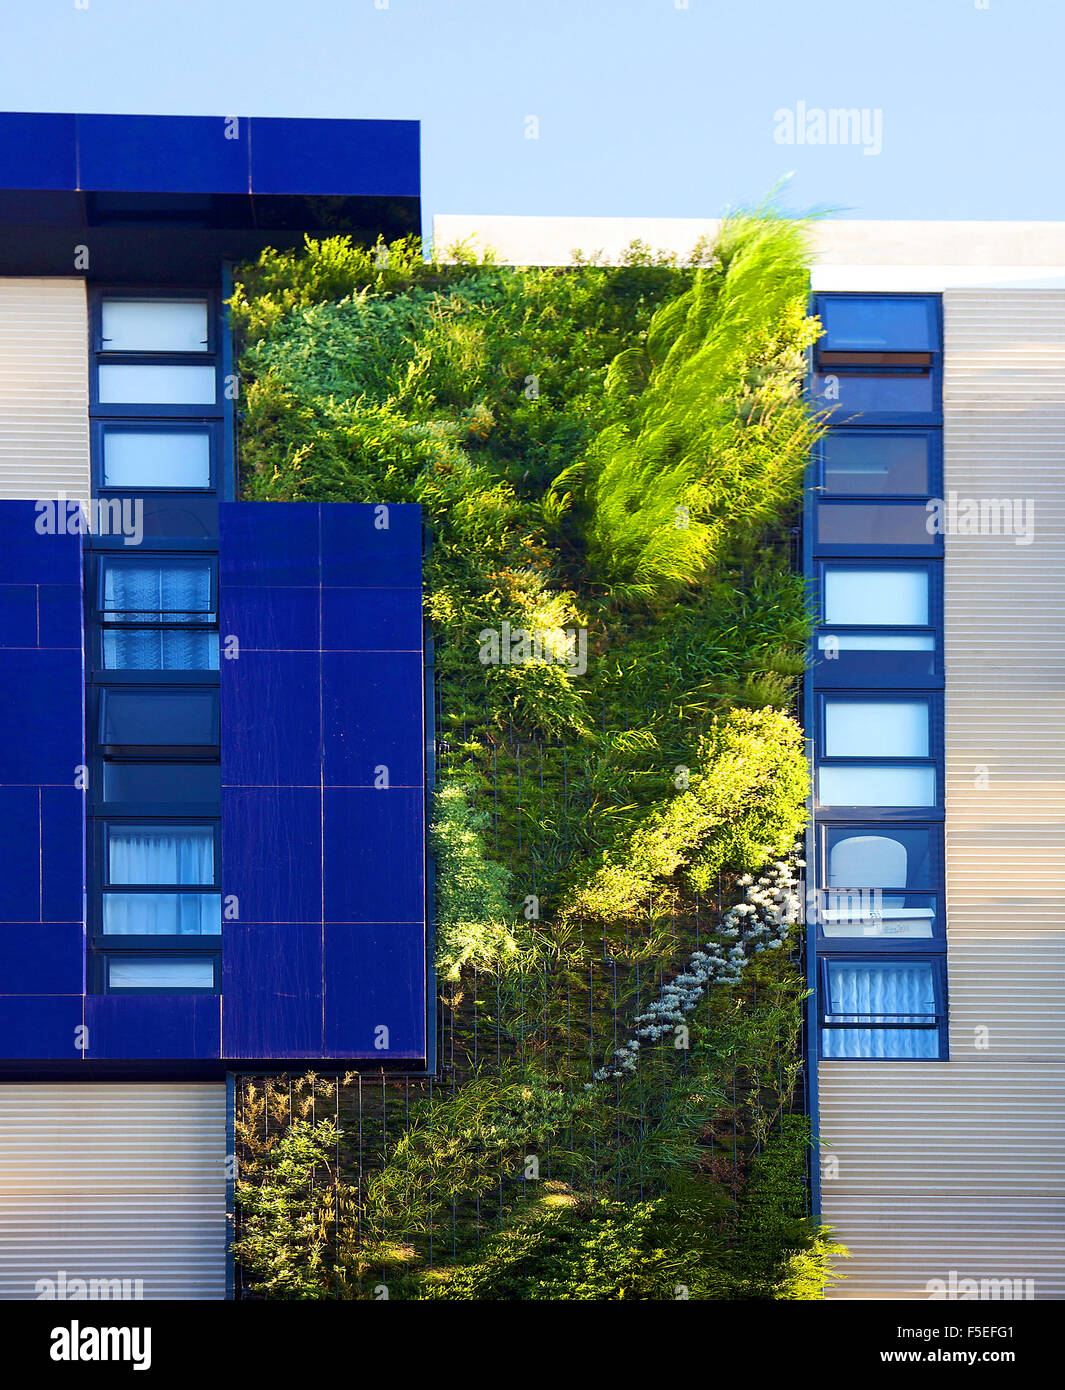 Patrick Blanc, un botanico francese, ha creato il suo più alto giardino verticale a sviluppo residenziale di Sydney. Foto Stock